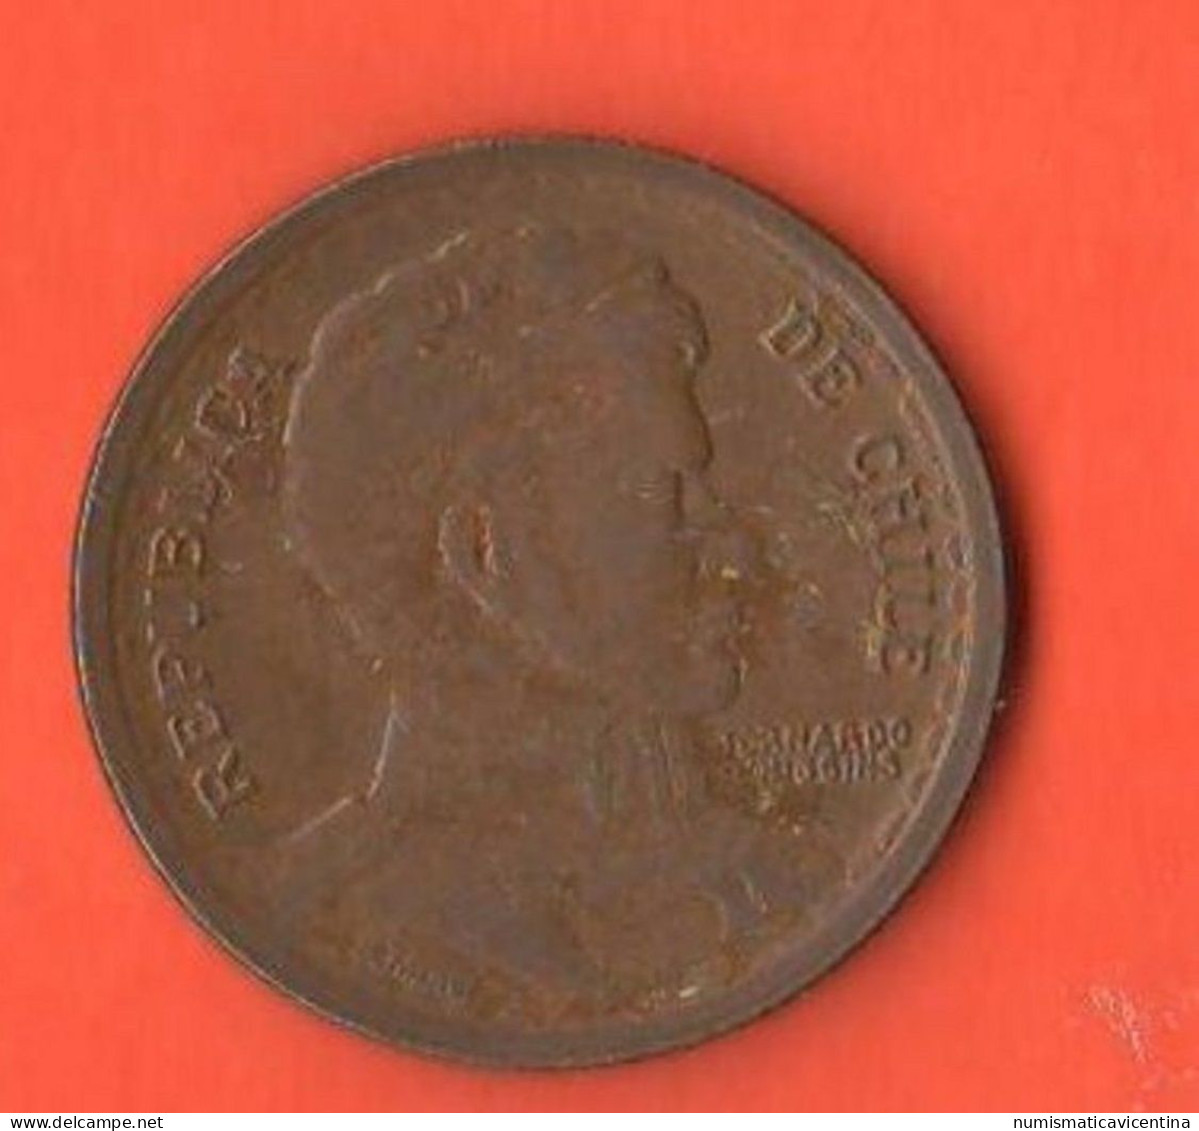 Cile Chile 1 Peso 1949 General Bernardo O'Higgens - Chili